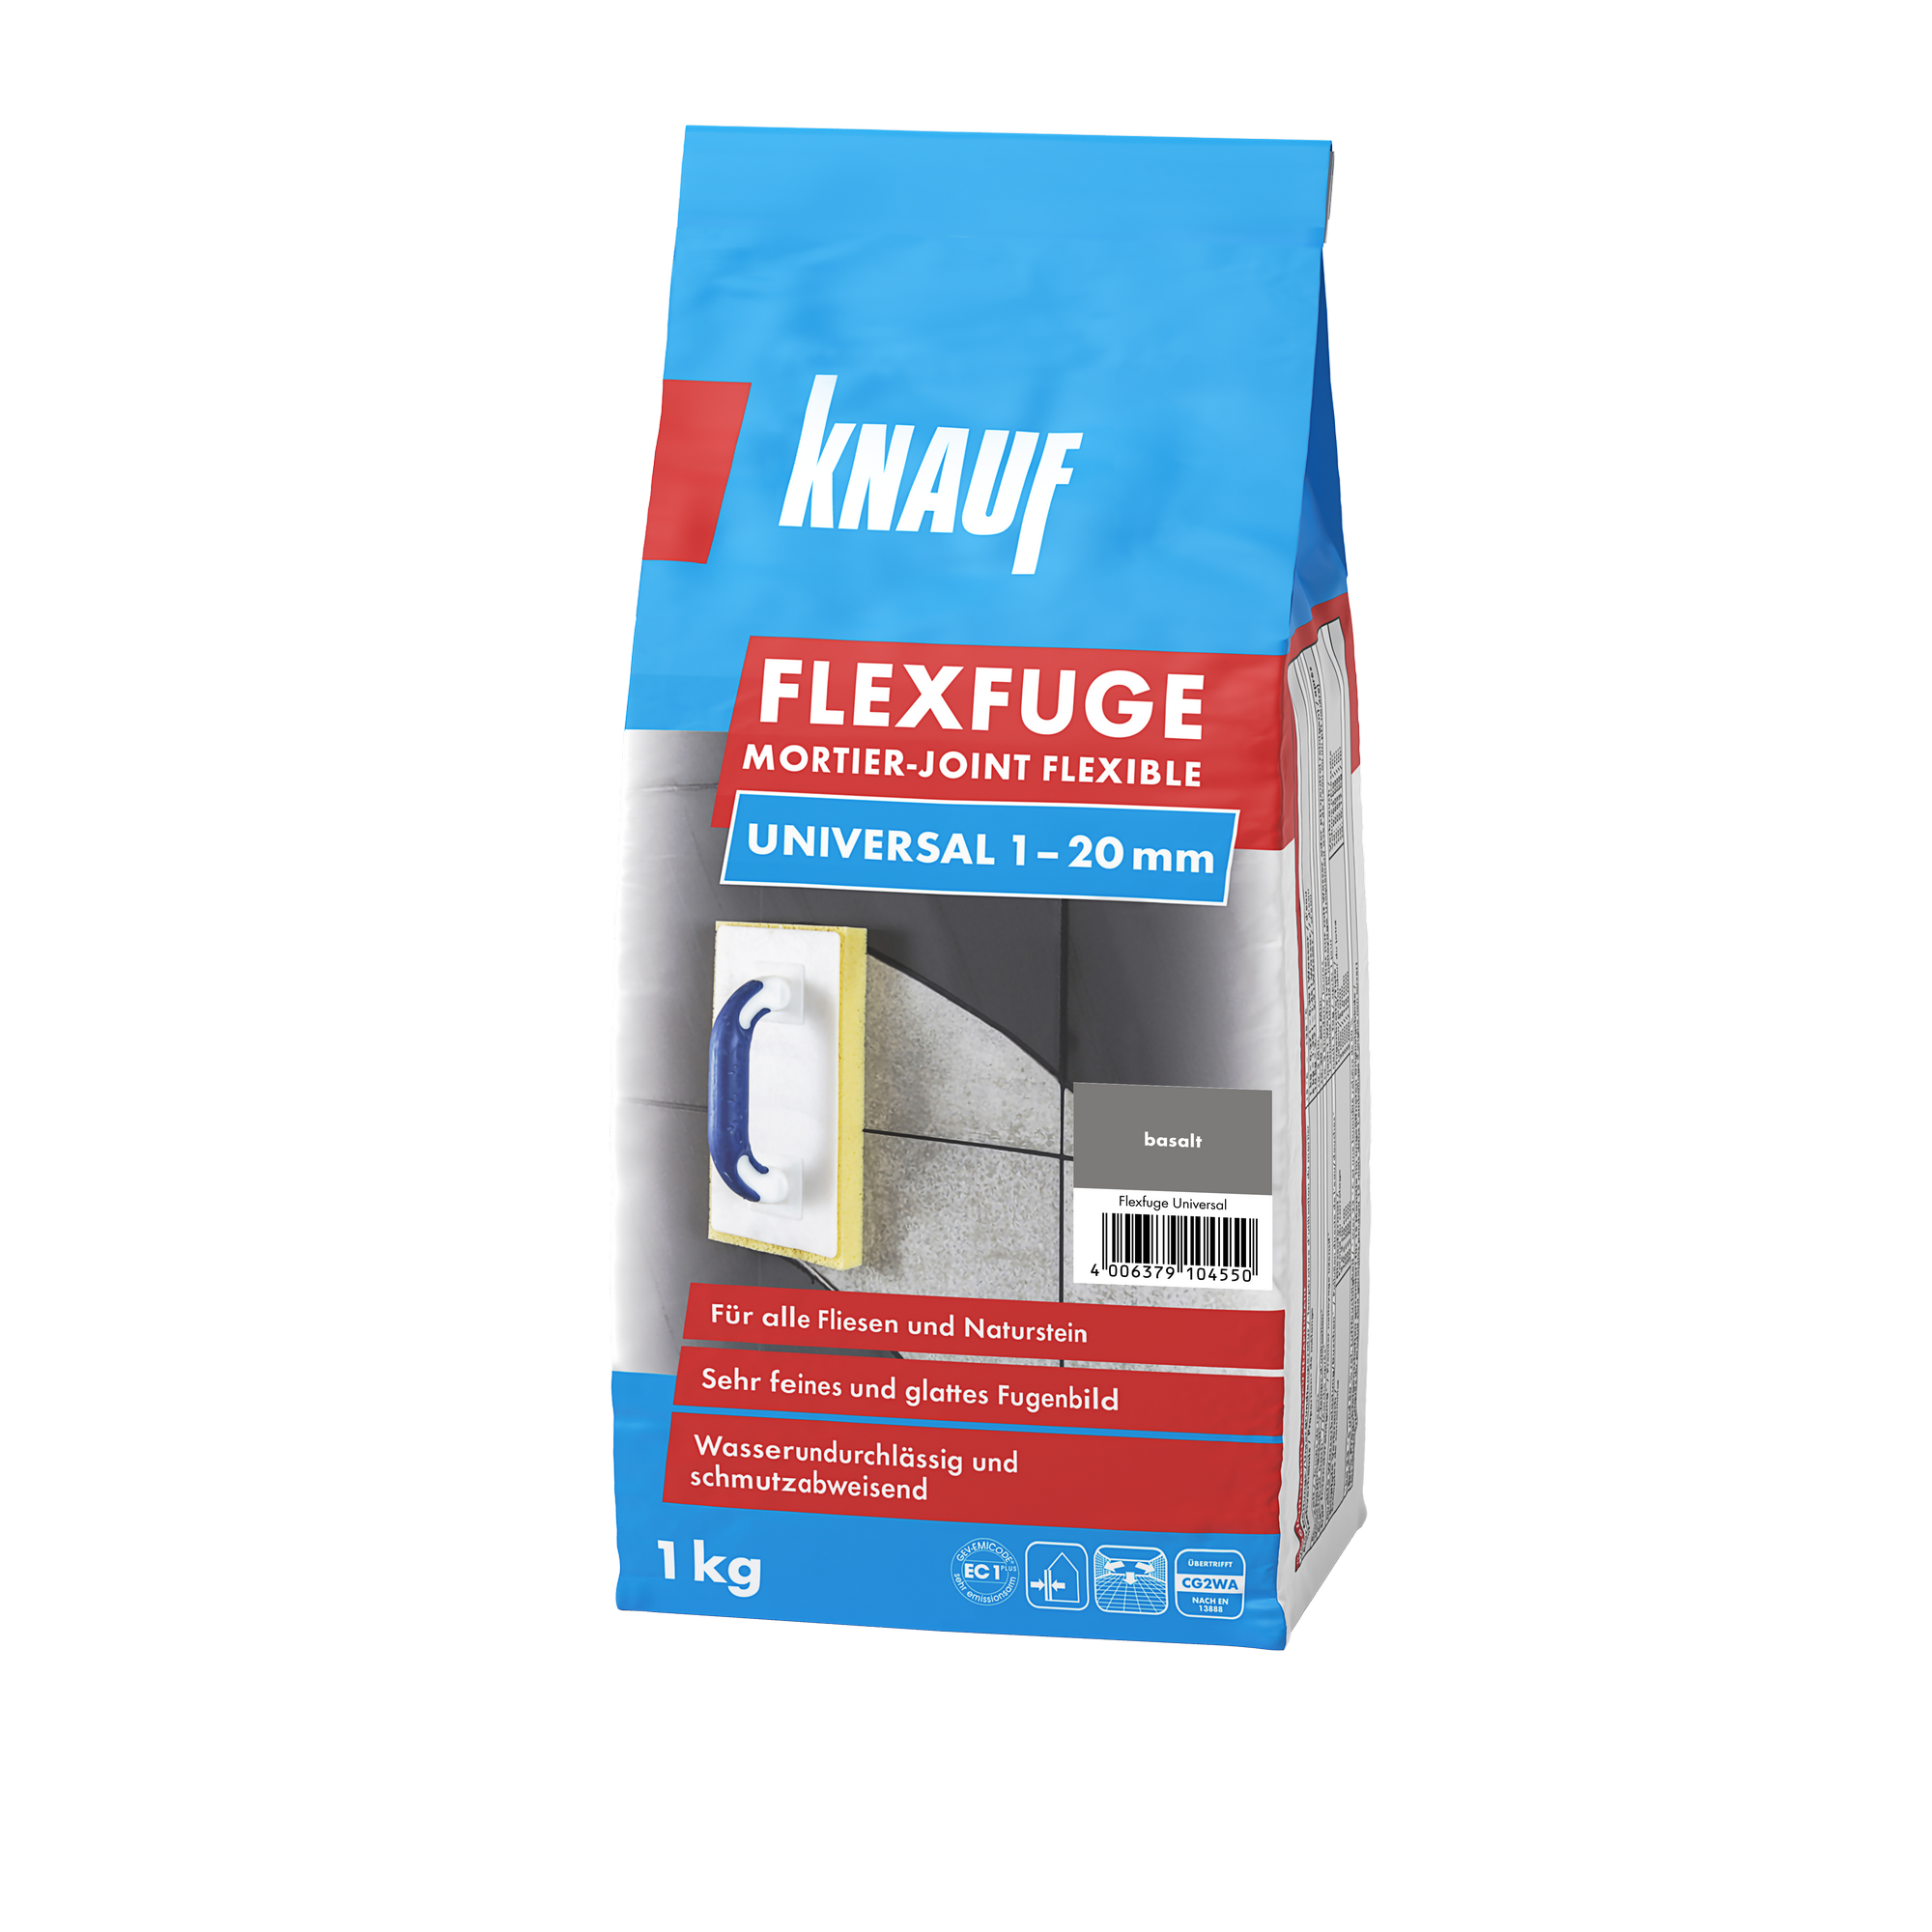 Flexfuge 'Universal' basalt 1 kg + product picture